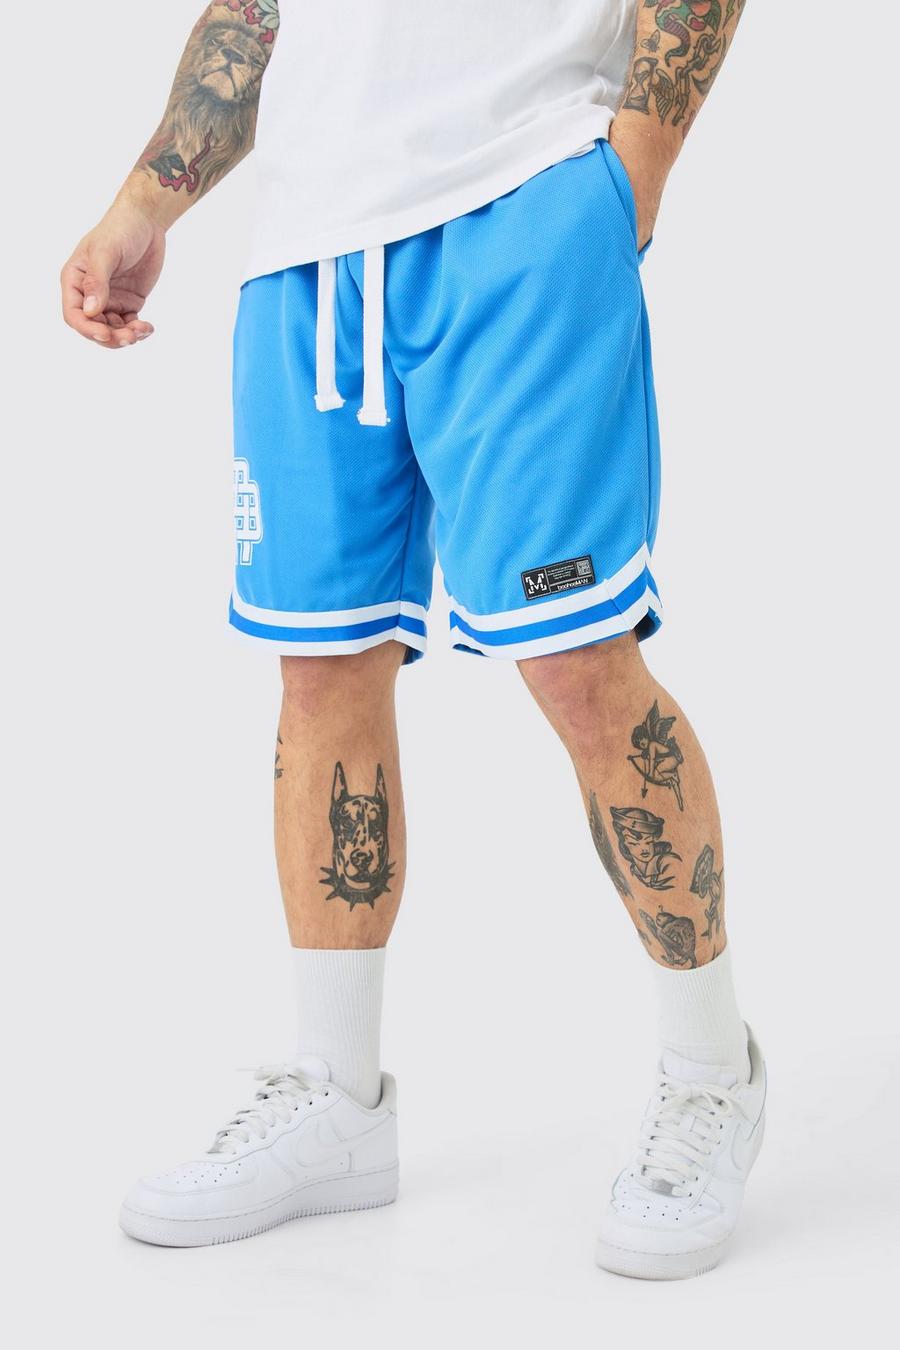 Pantalones cortos de malla estilo baloncesto con cinta y etiqueta de tela, Cobalt